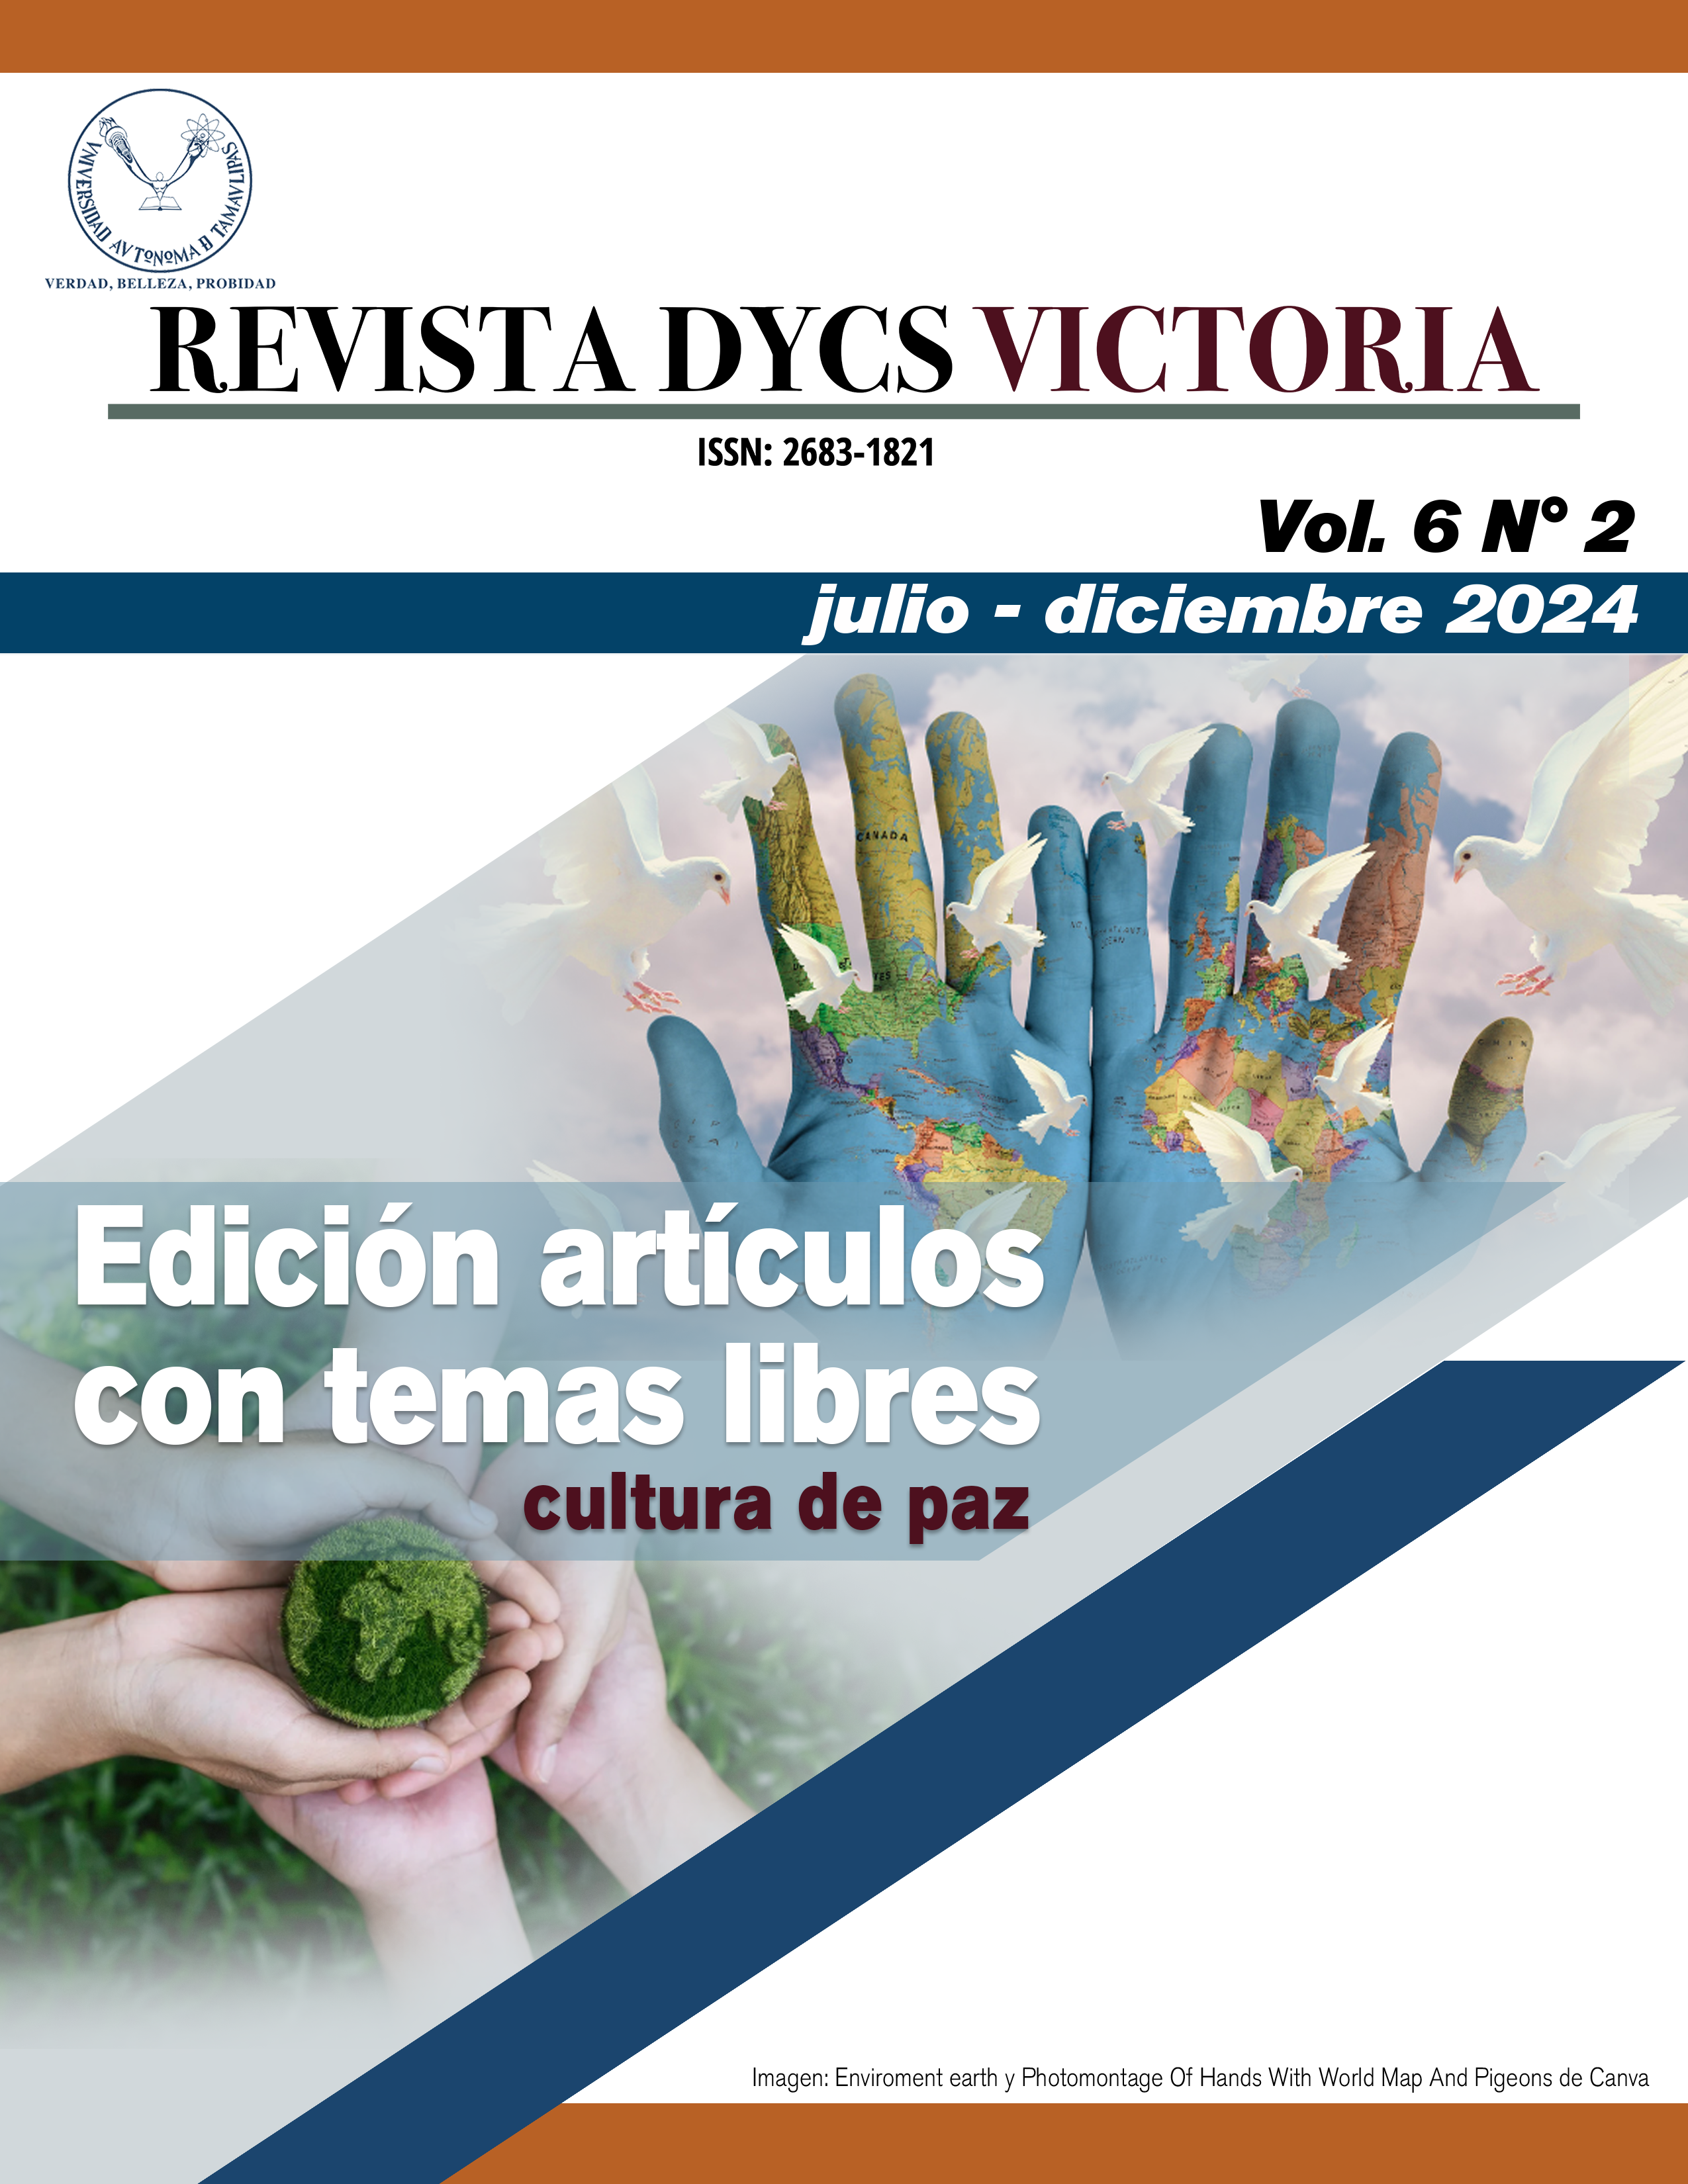 					Ver Vol. 6 No. 2 (julio - diciembre 2024). Edición artículos con temas libres: Cultura de Paz
				